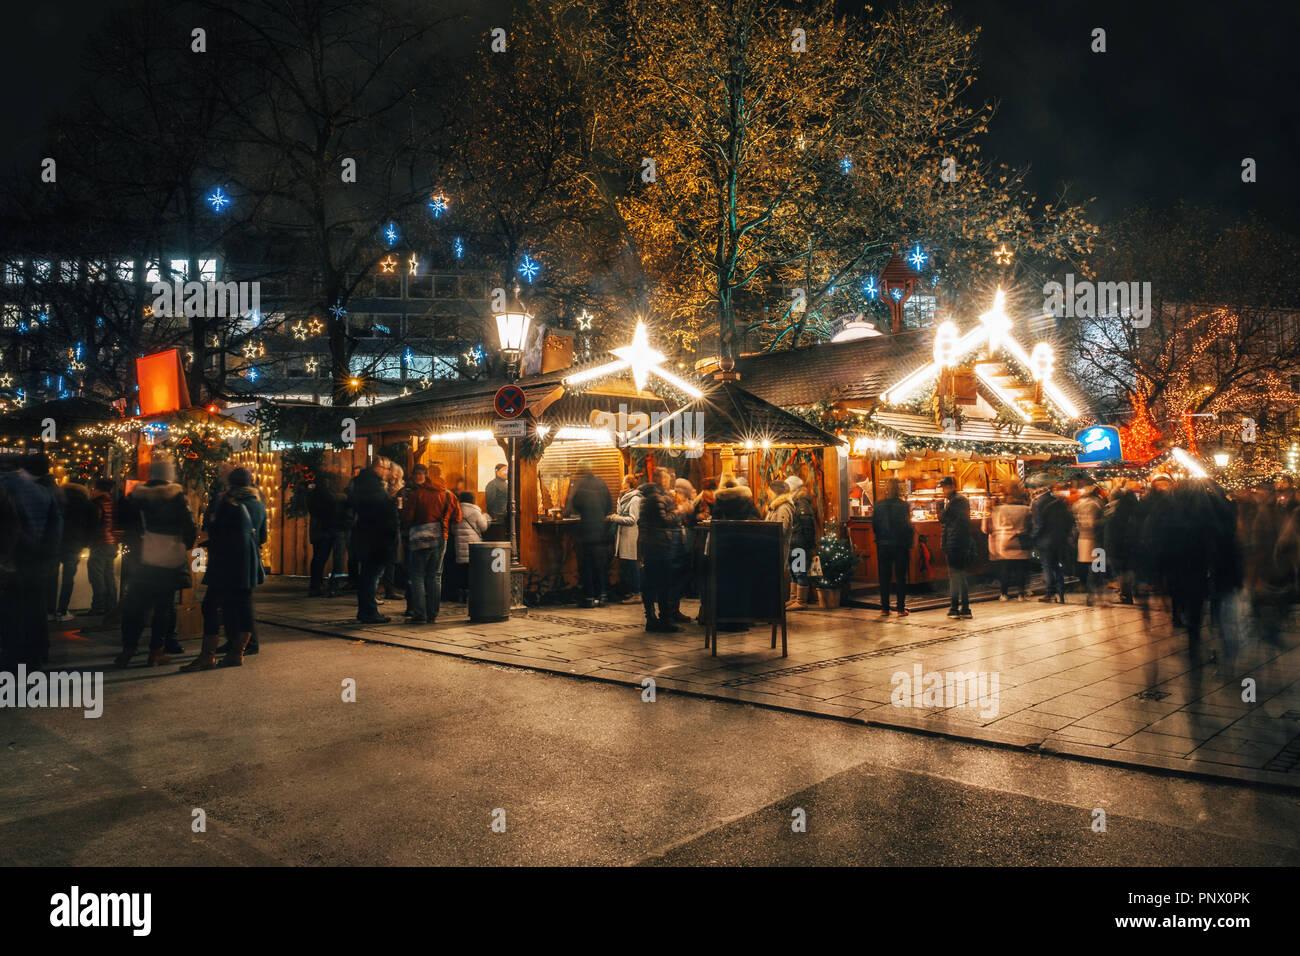 Voll traditioneller Weihnachtsmarkt in der Nacht mit Beleuchtung am Rindermarkt in München, Deutschland. Stockfoto